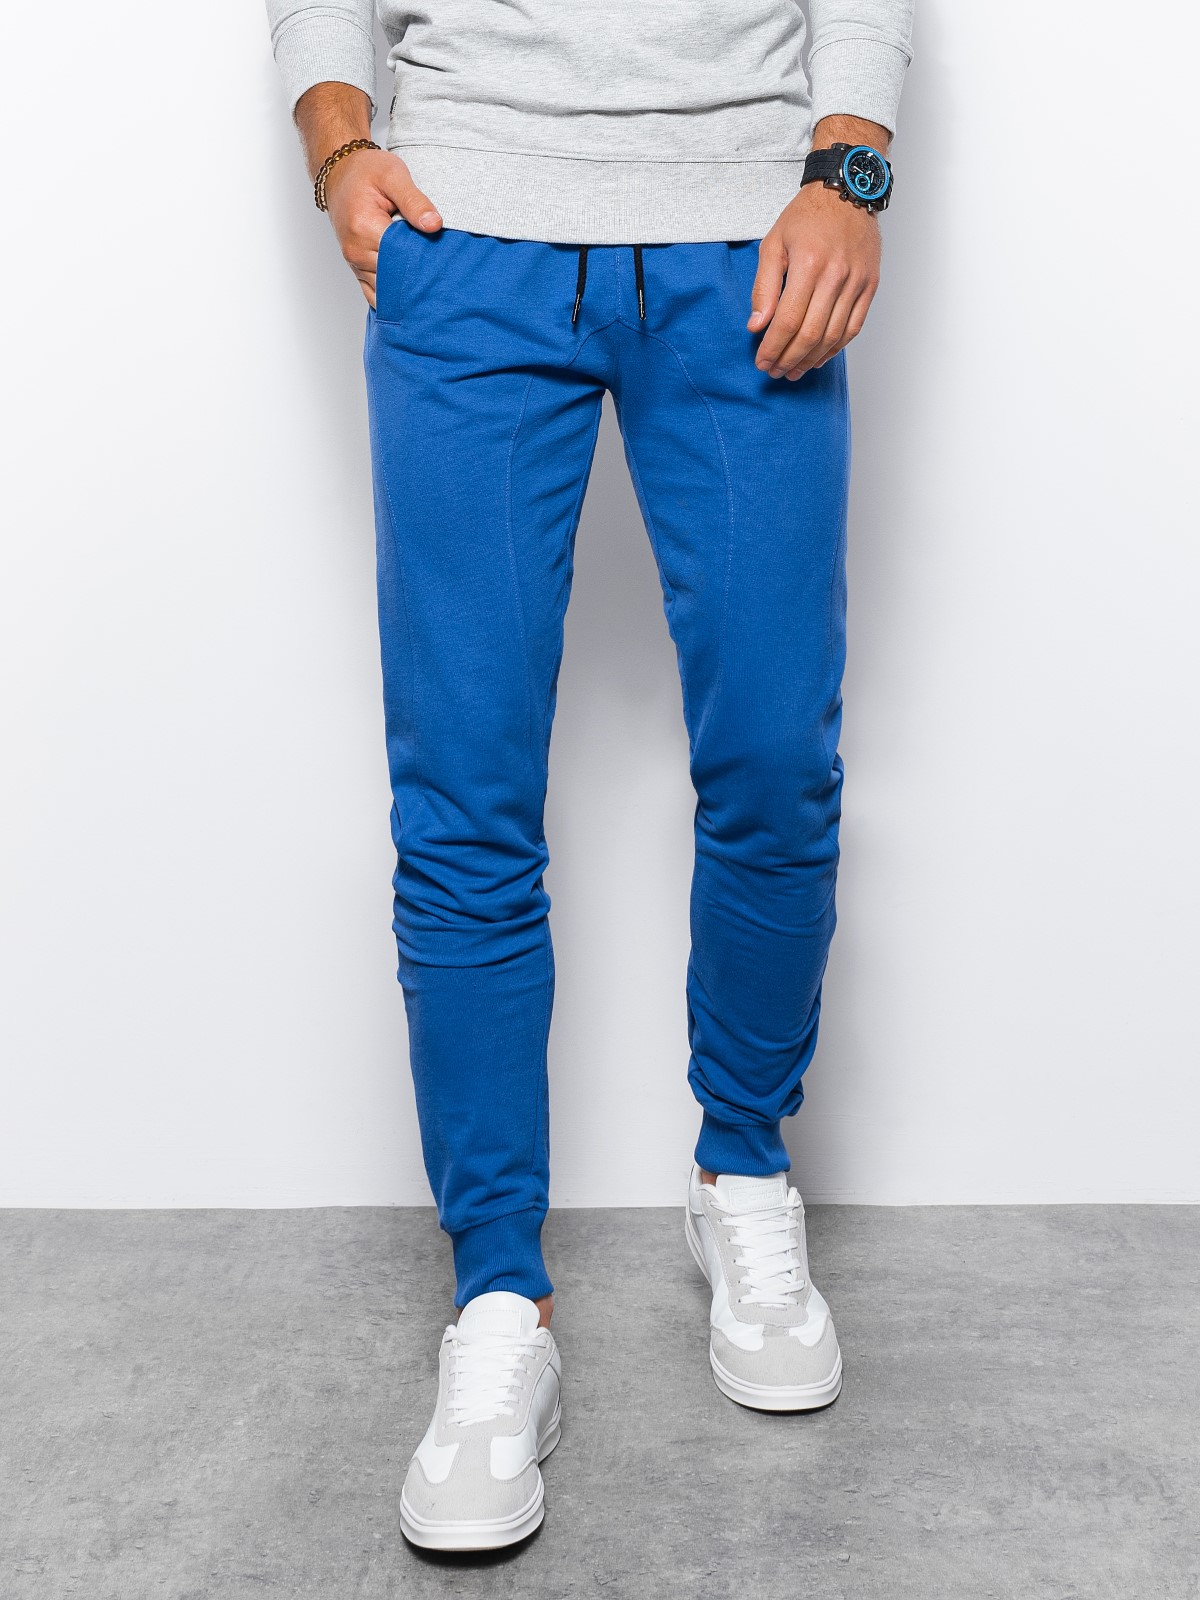 Pantaloni pentru barbati P952 - albastru